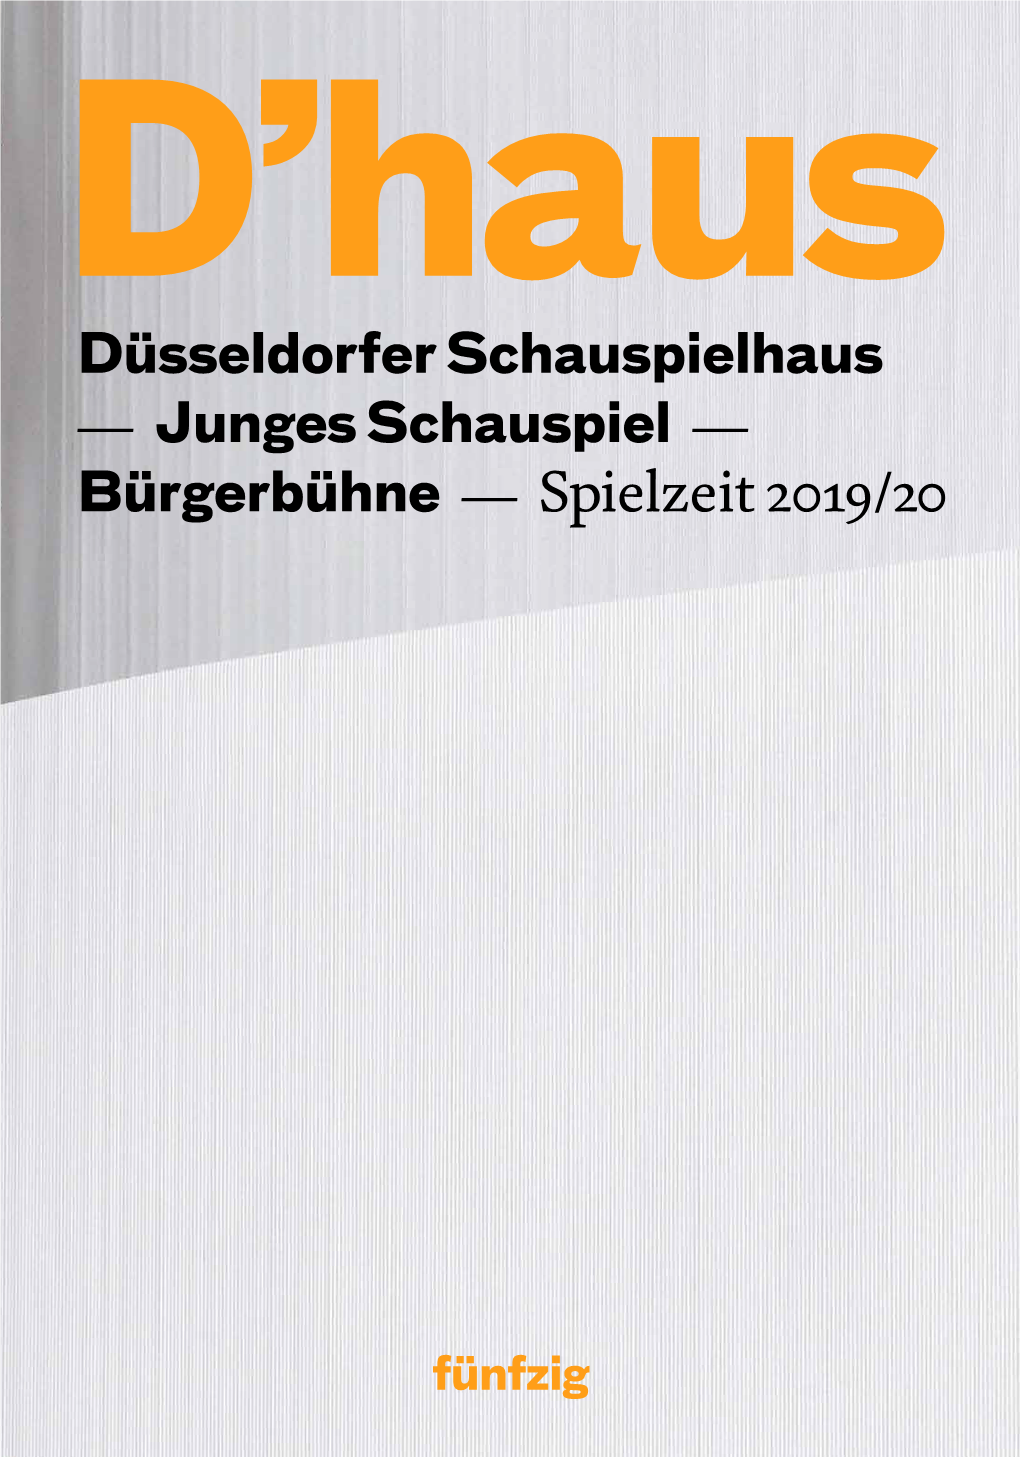 Düsseldorfer Schauspielhaus — Junges Schauspiel — Bürgerbühne — Spielzeit 2019/20